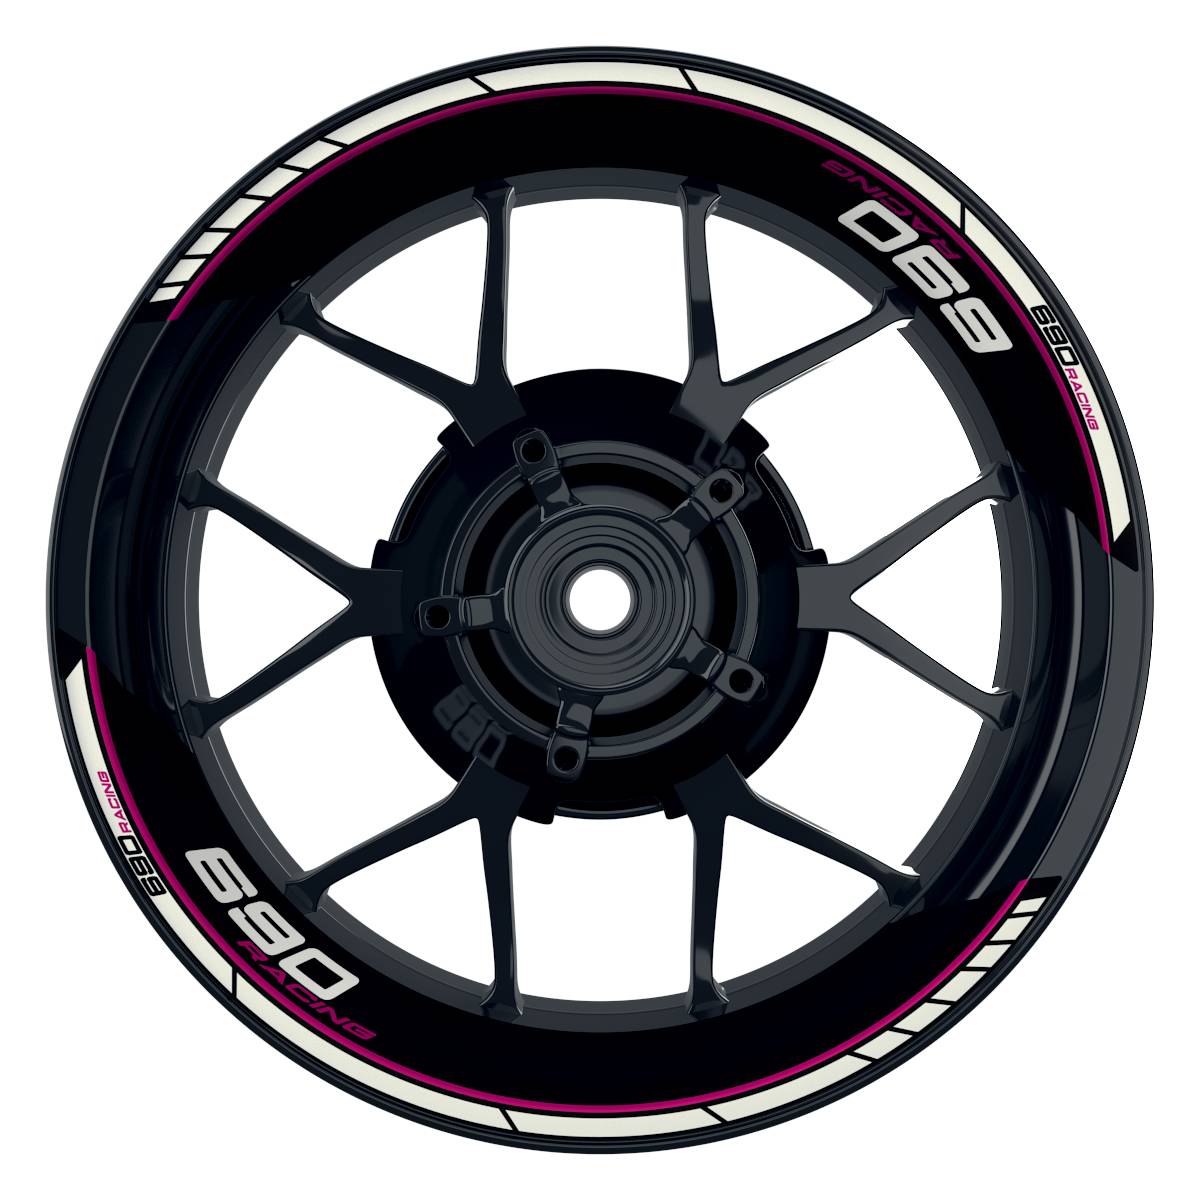 KTM Racing 690 Clean schwarz pink Frontansicht